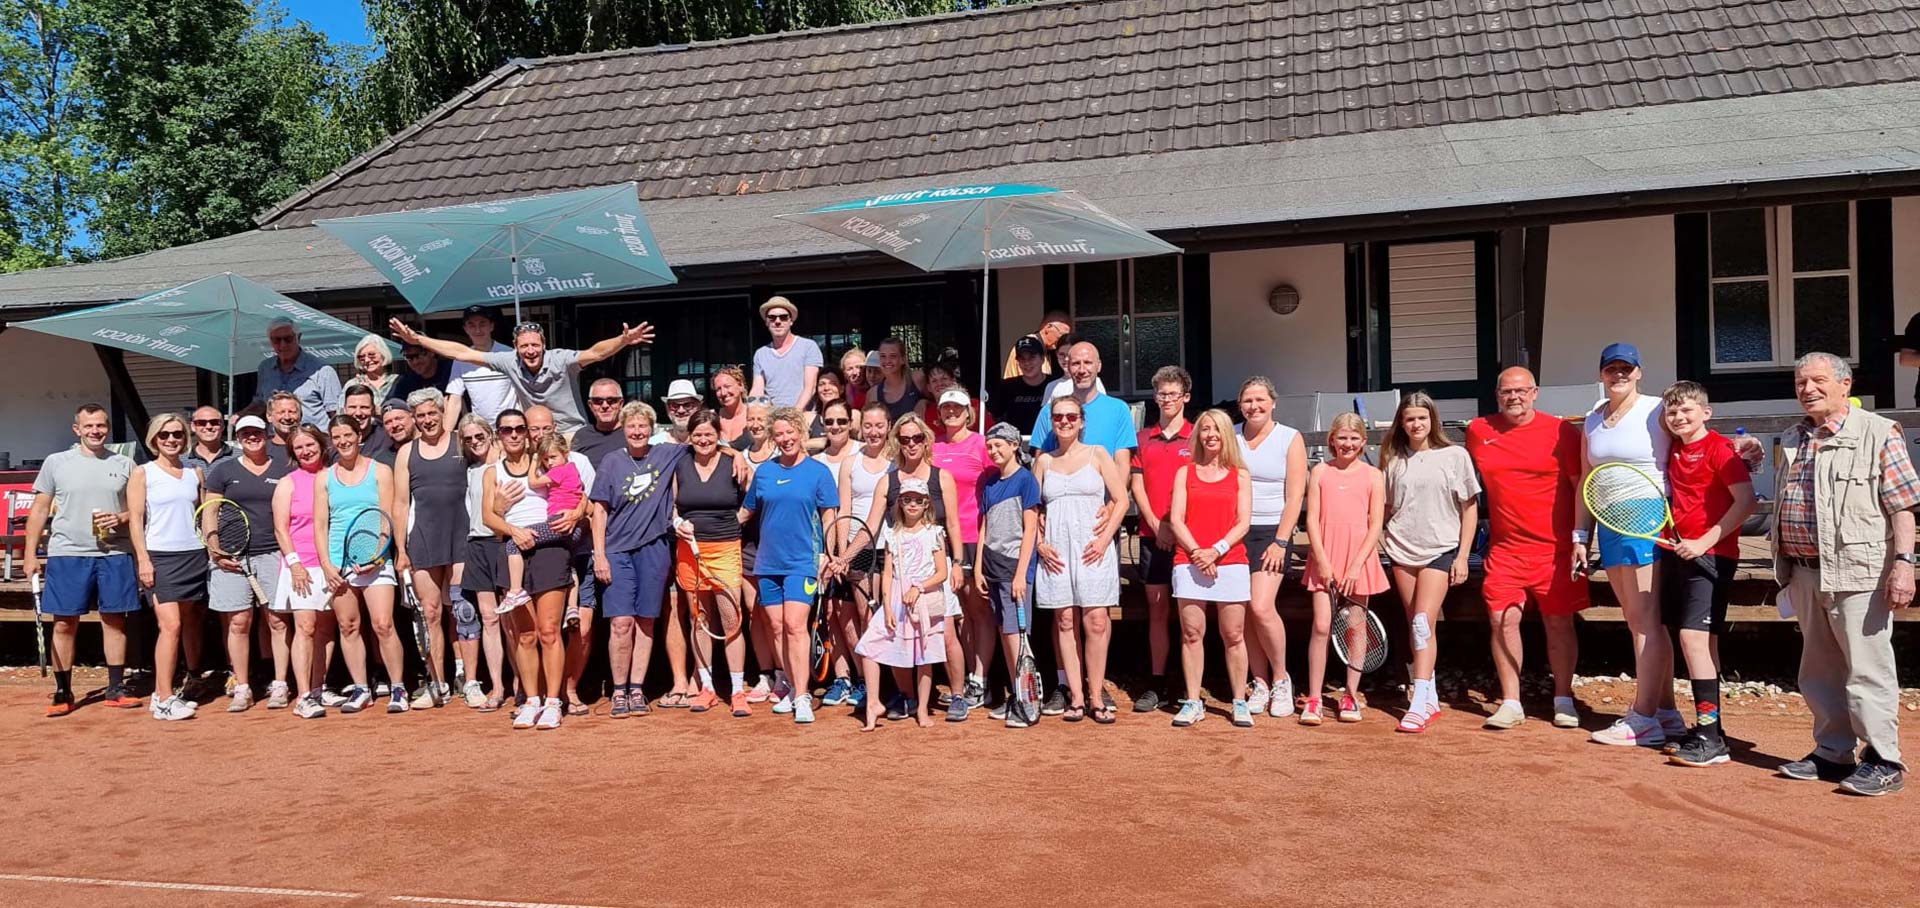 Tennis in Wiehl boomt: Tolle Resonanz beim Sommerfest des TC Wiehl